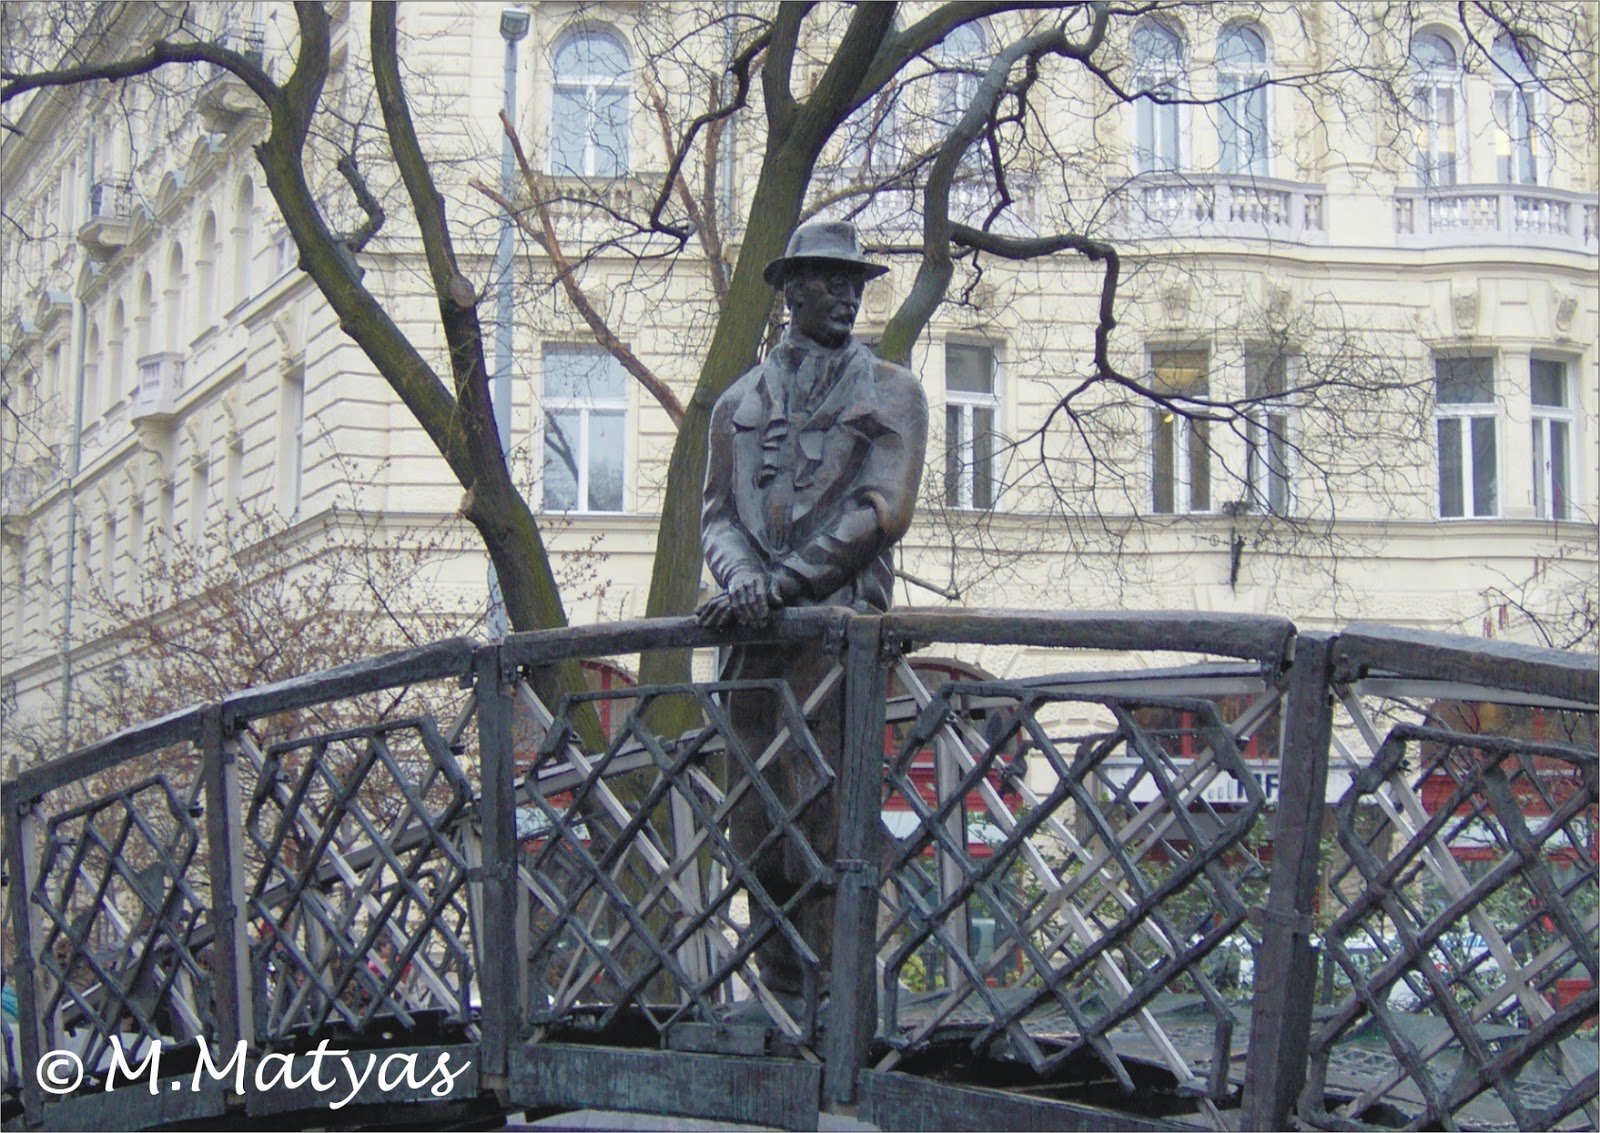  Viktor Orban a fost dur criticat pentru că a dispus mutarea unei statui a lui Imre Nagy